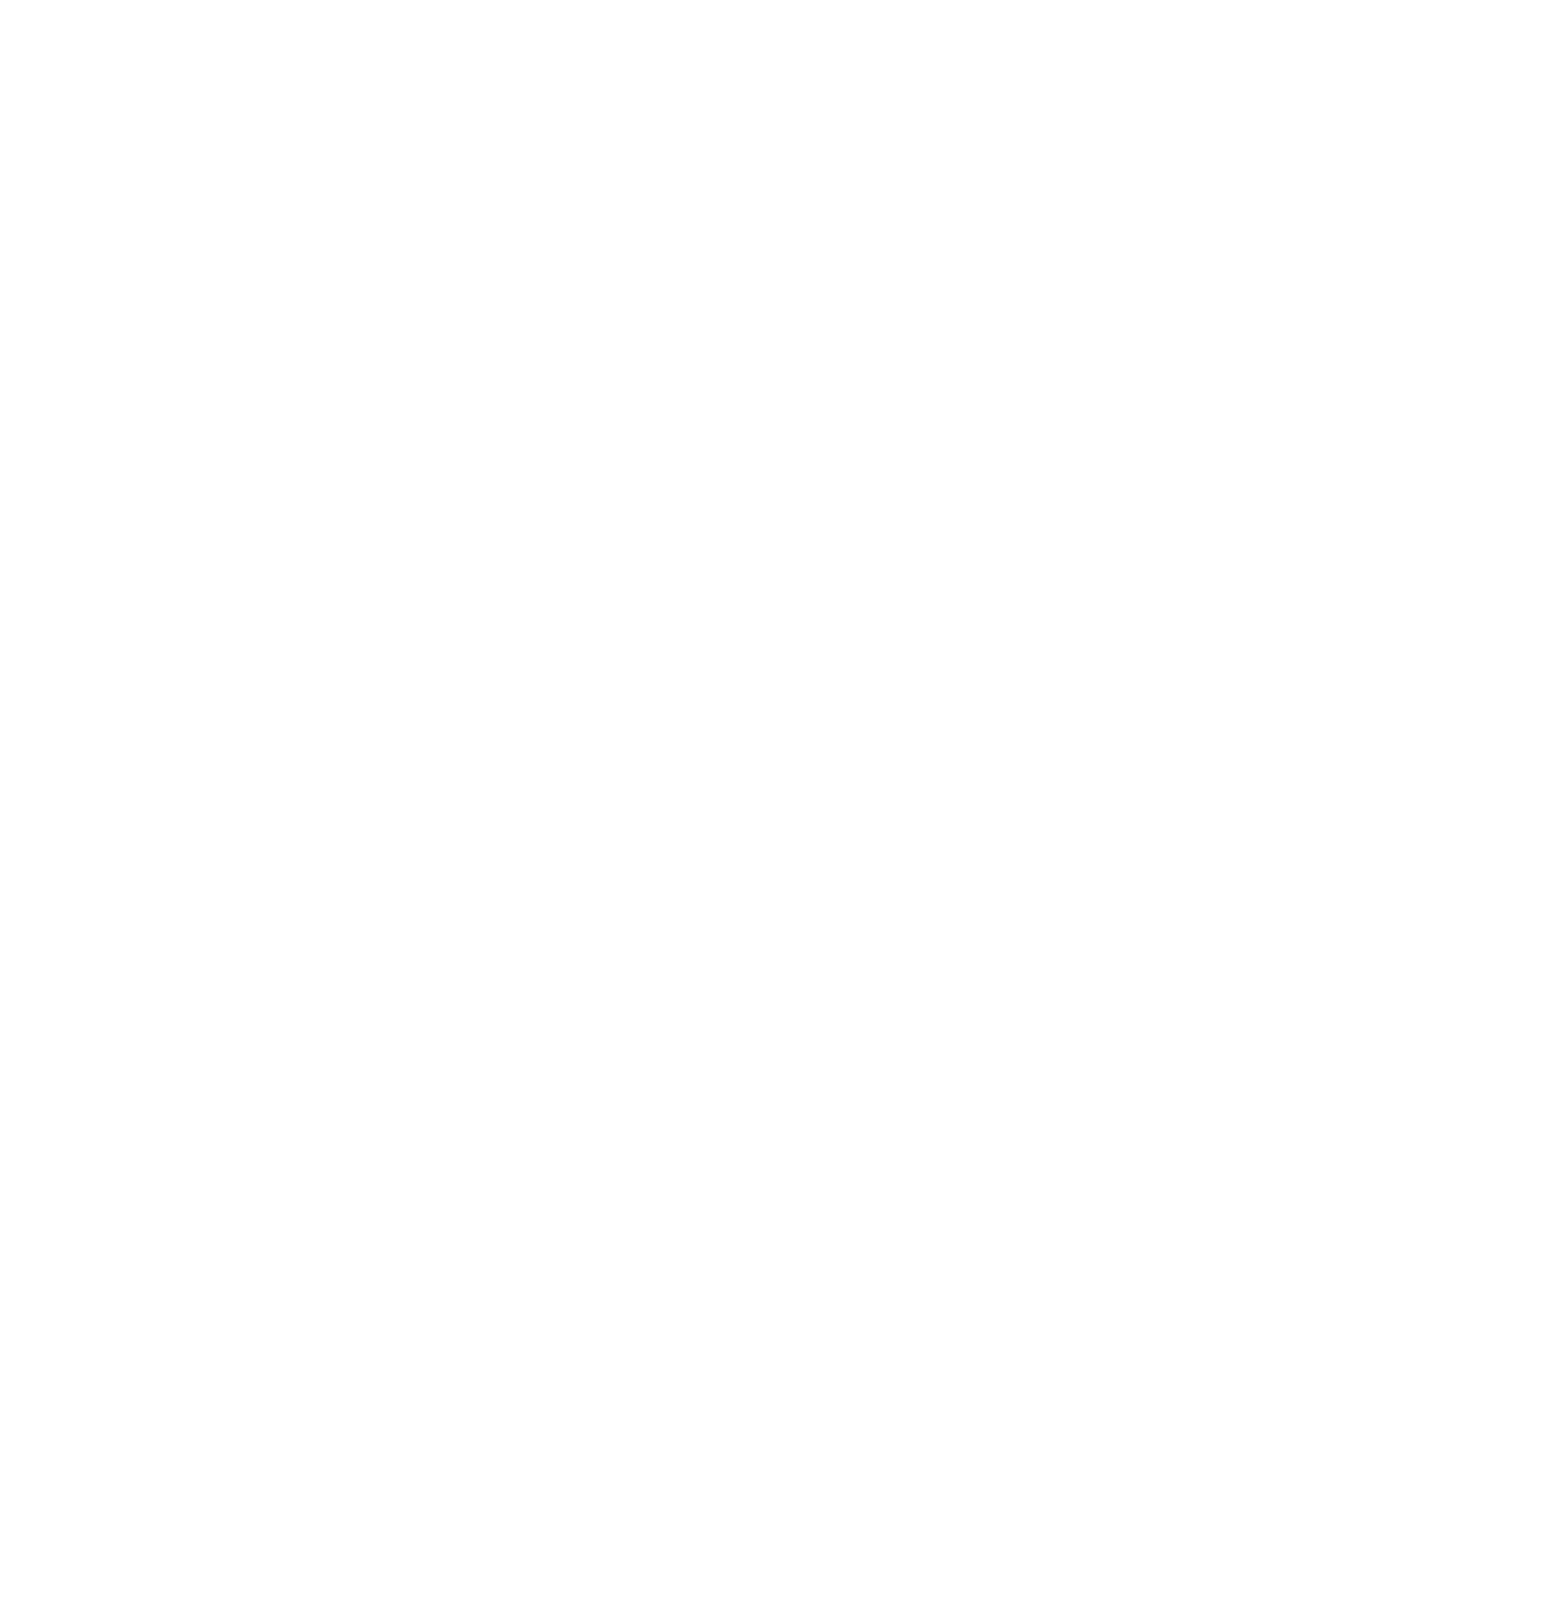 Nestlé logo grand pour les fonds sombres (PNG transparent)